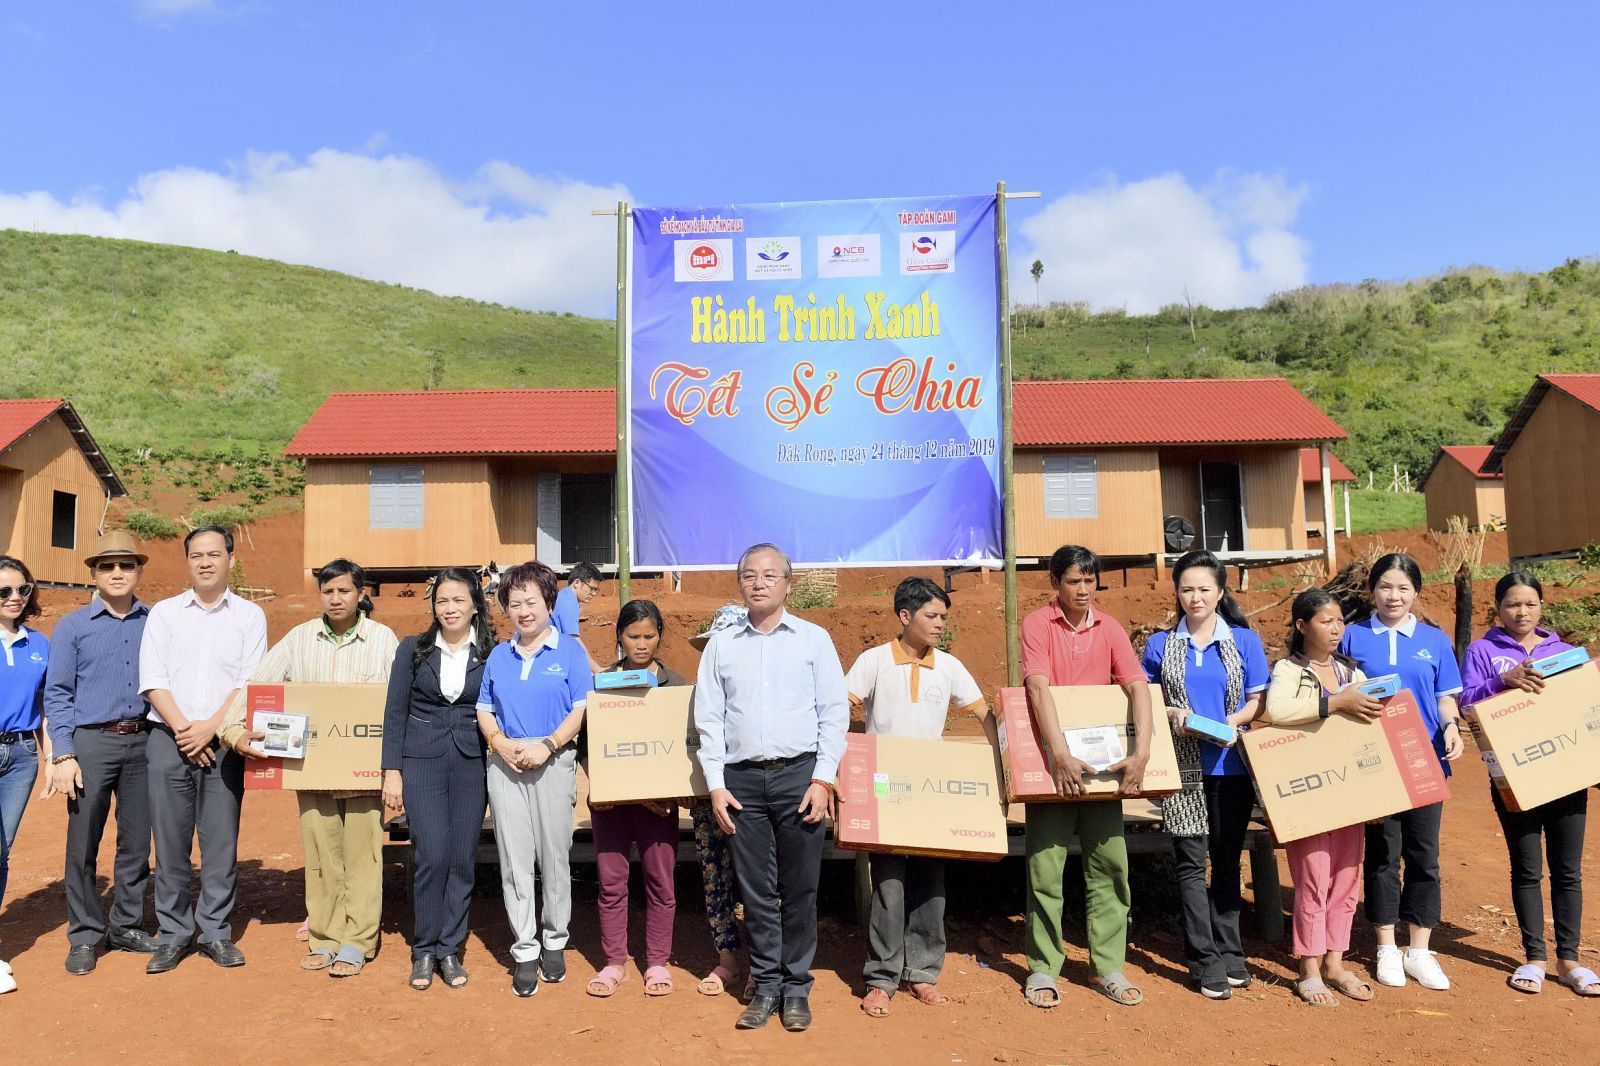 Ông Phạm Công Thành – Phó Giám đốc Sở Kế hoạch và Đầu tư tỉnh Gia Lai (thứ 8 từ trái sang) cùng lãnh đạo Quỹ Hành Trình Xanh trao tặng tivi cho các hộ nghèo